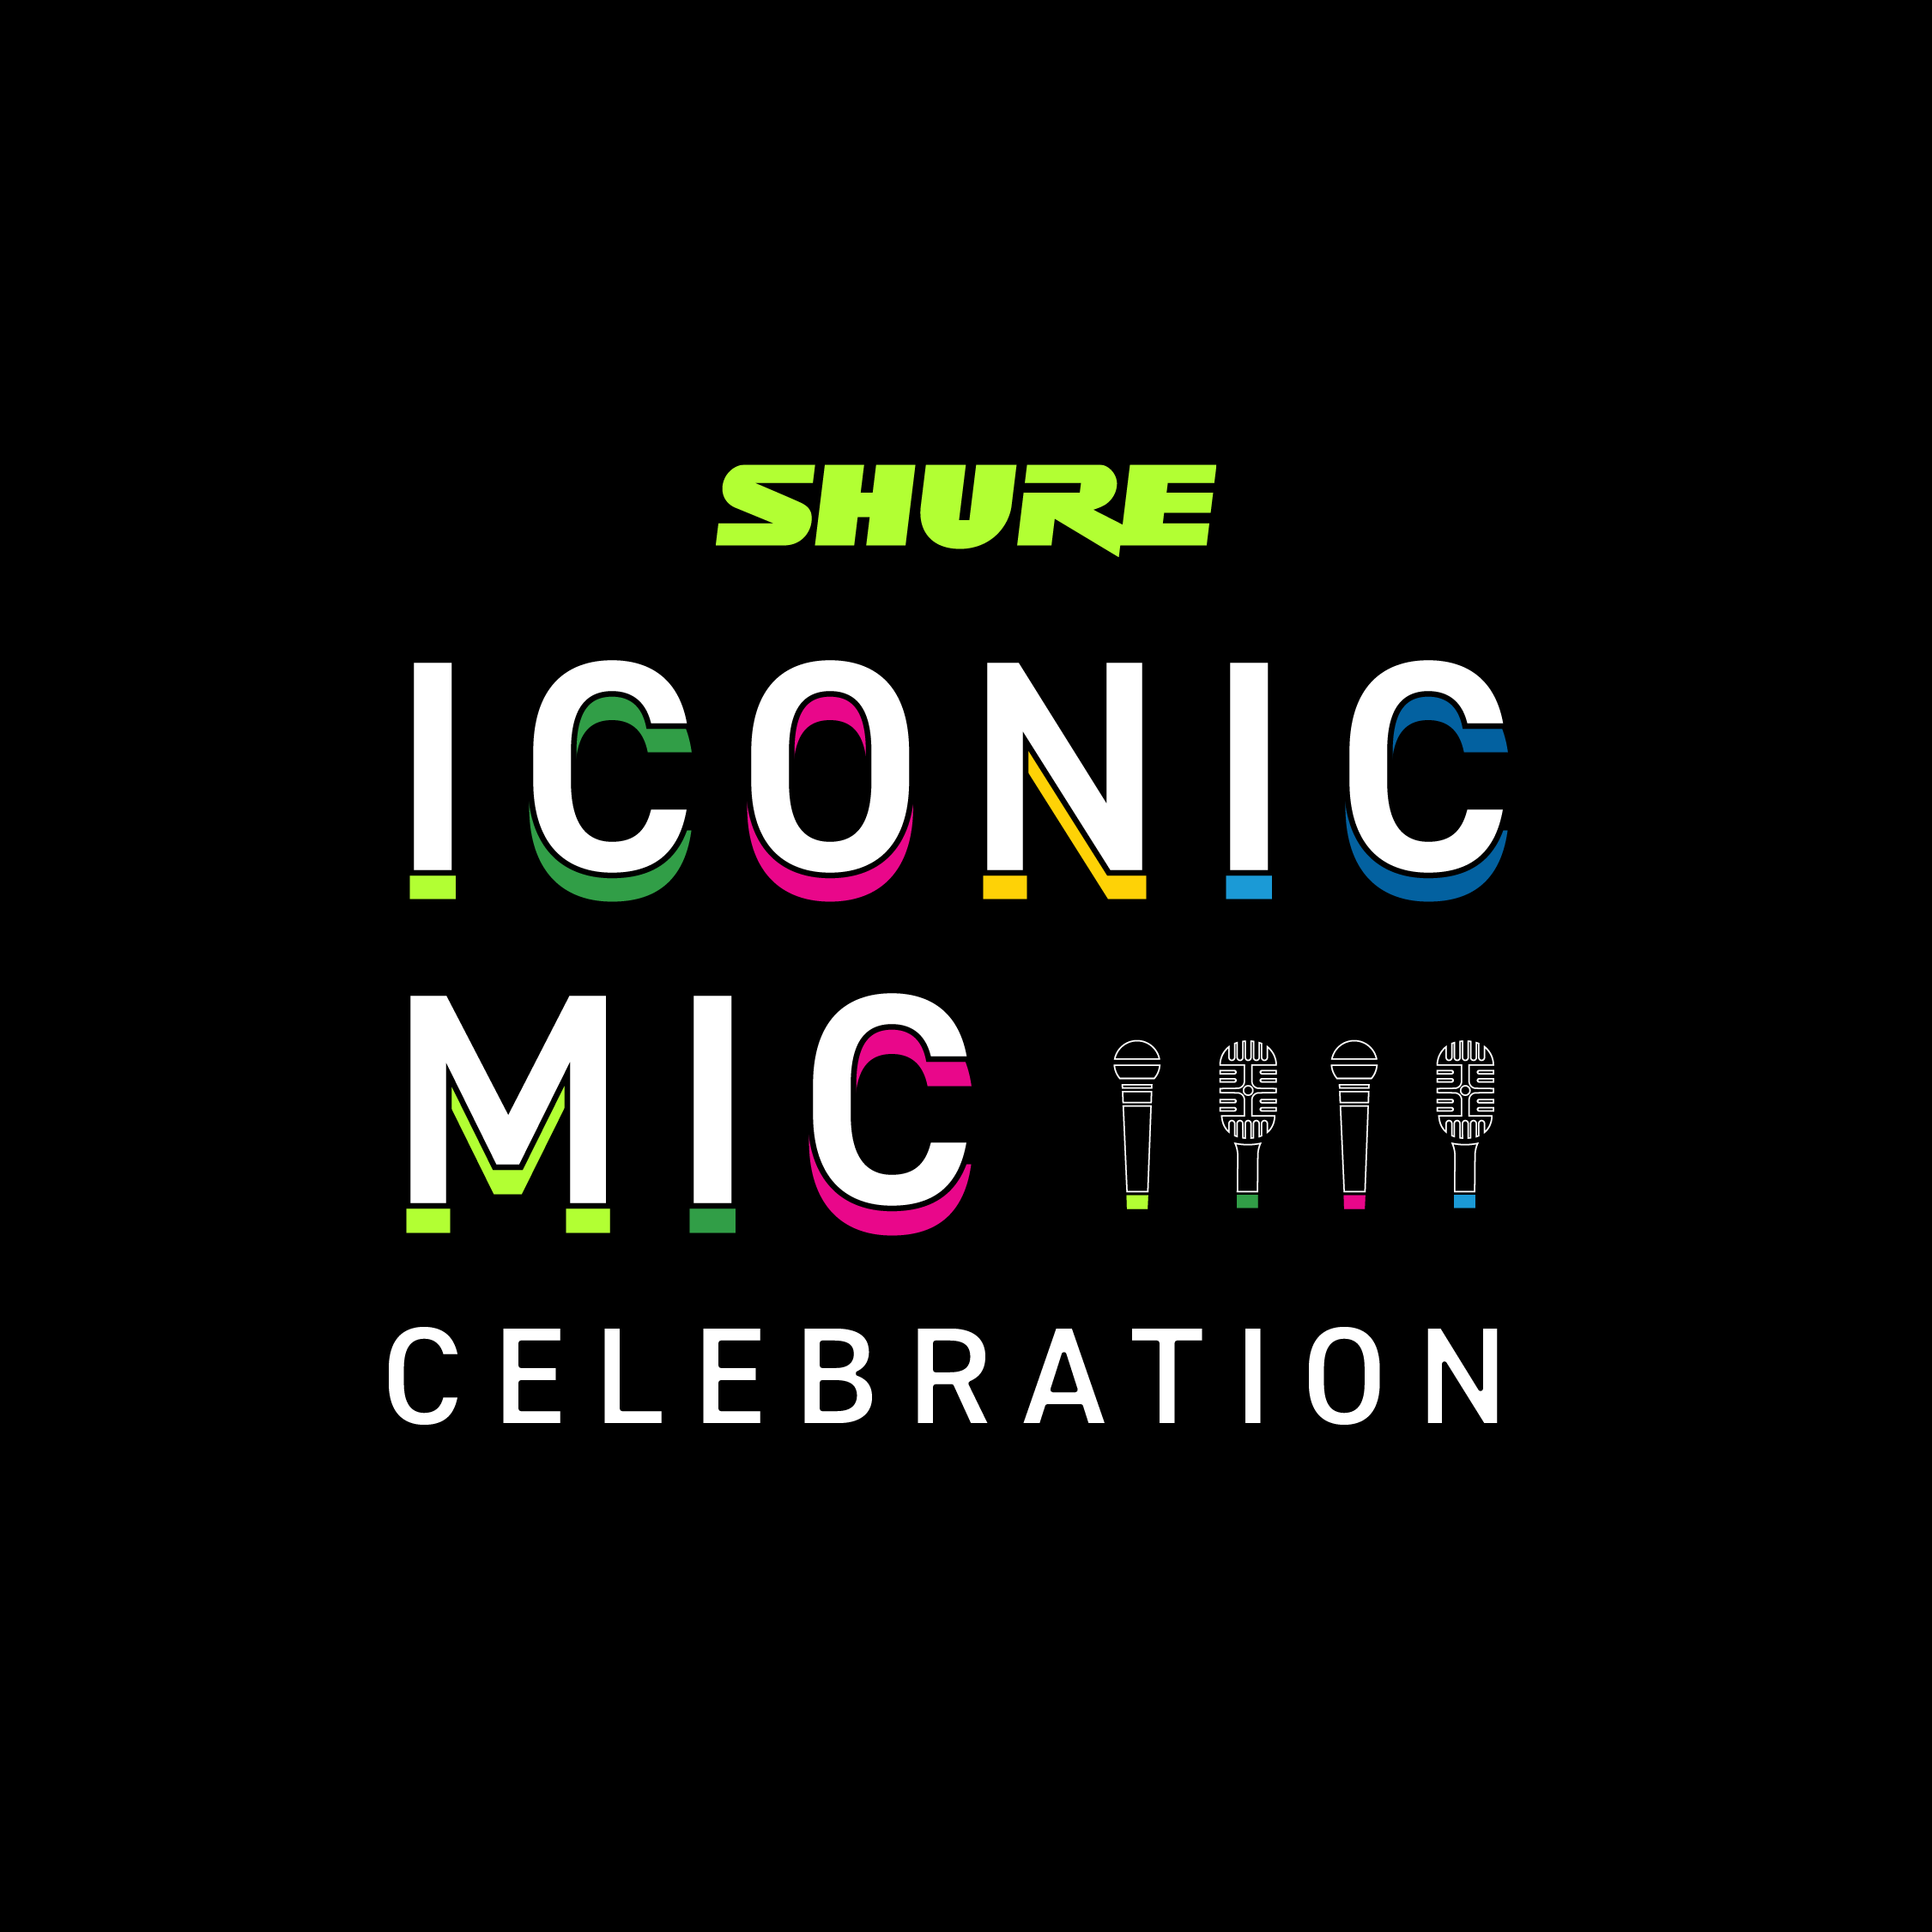 Shure Iconic Mic Celebration